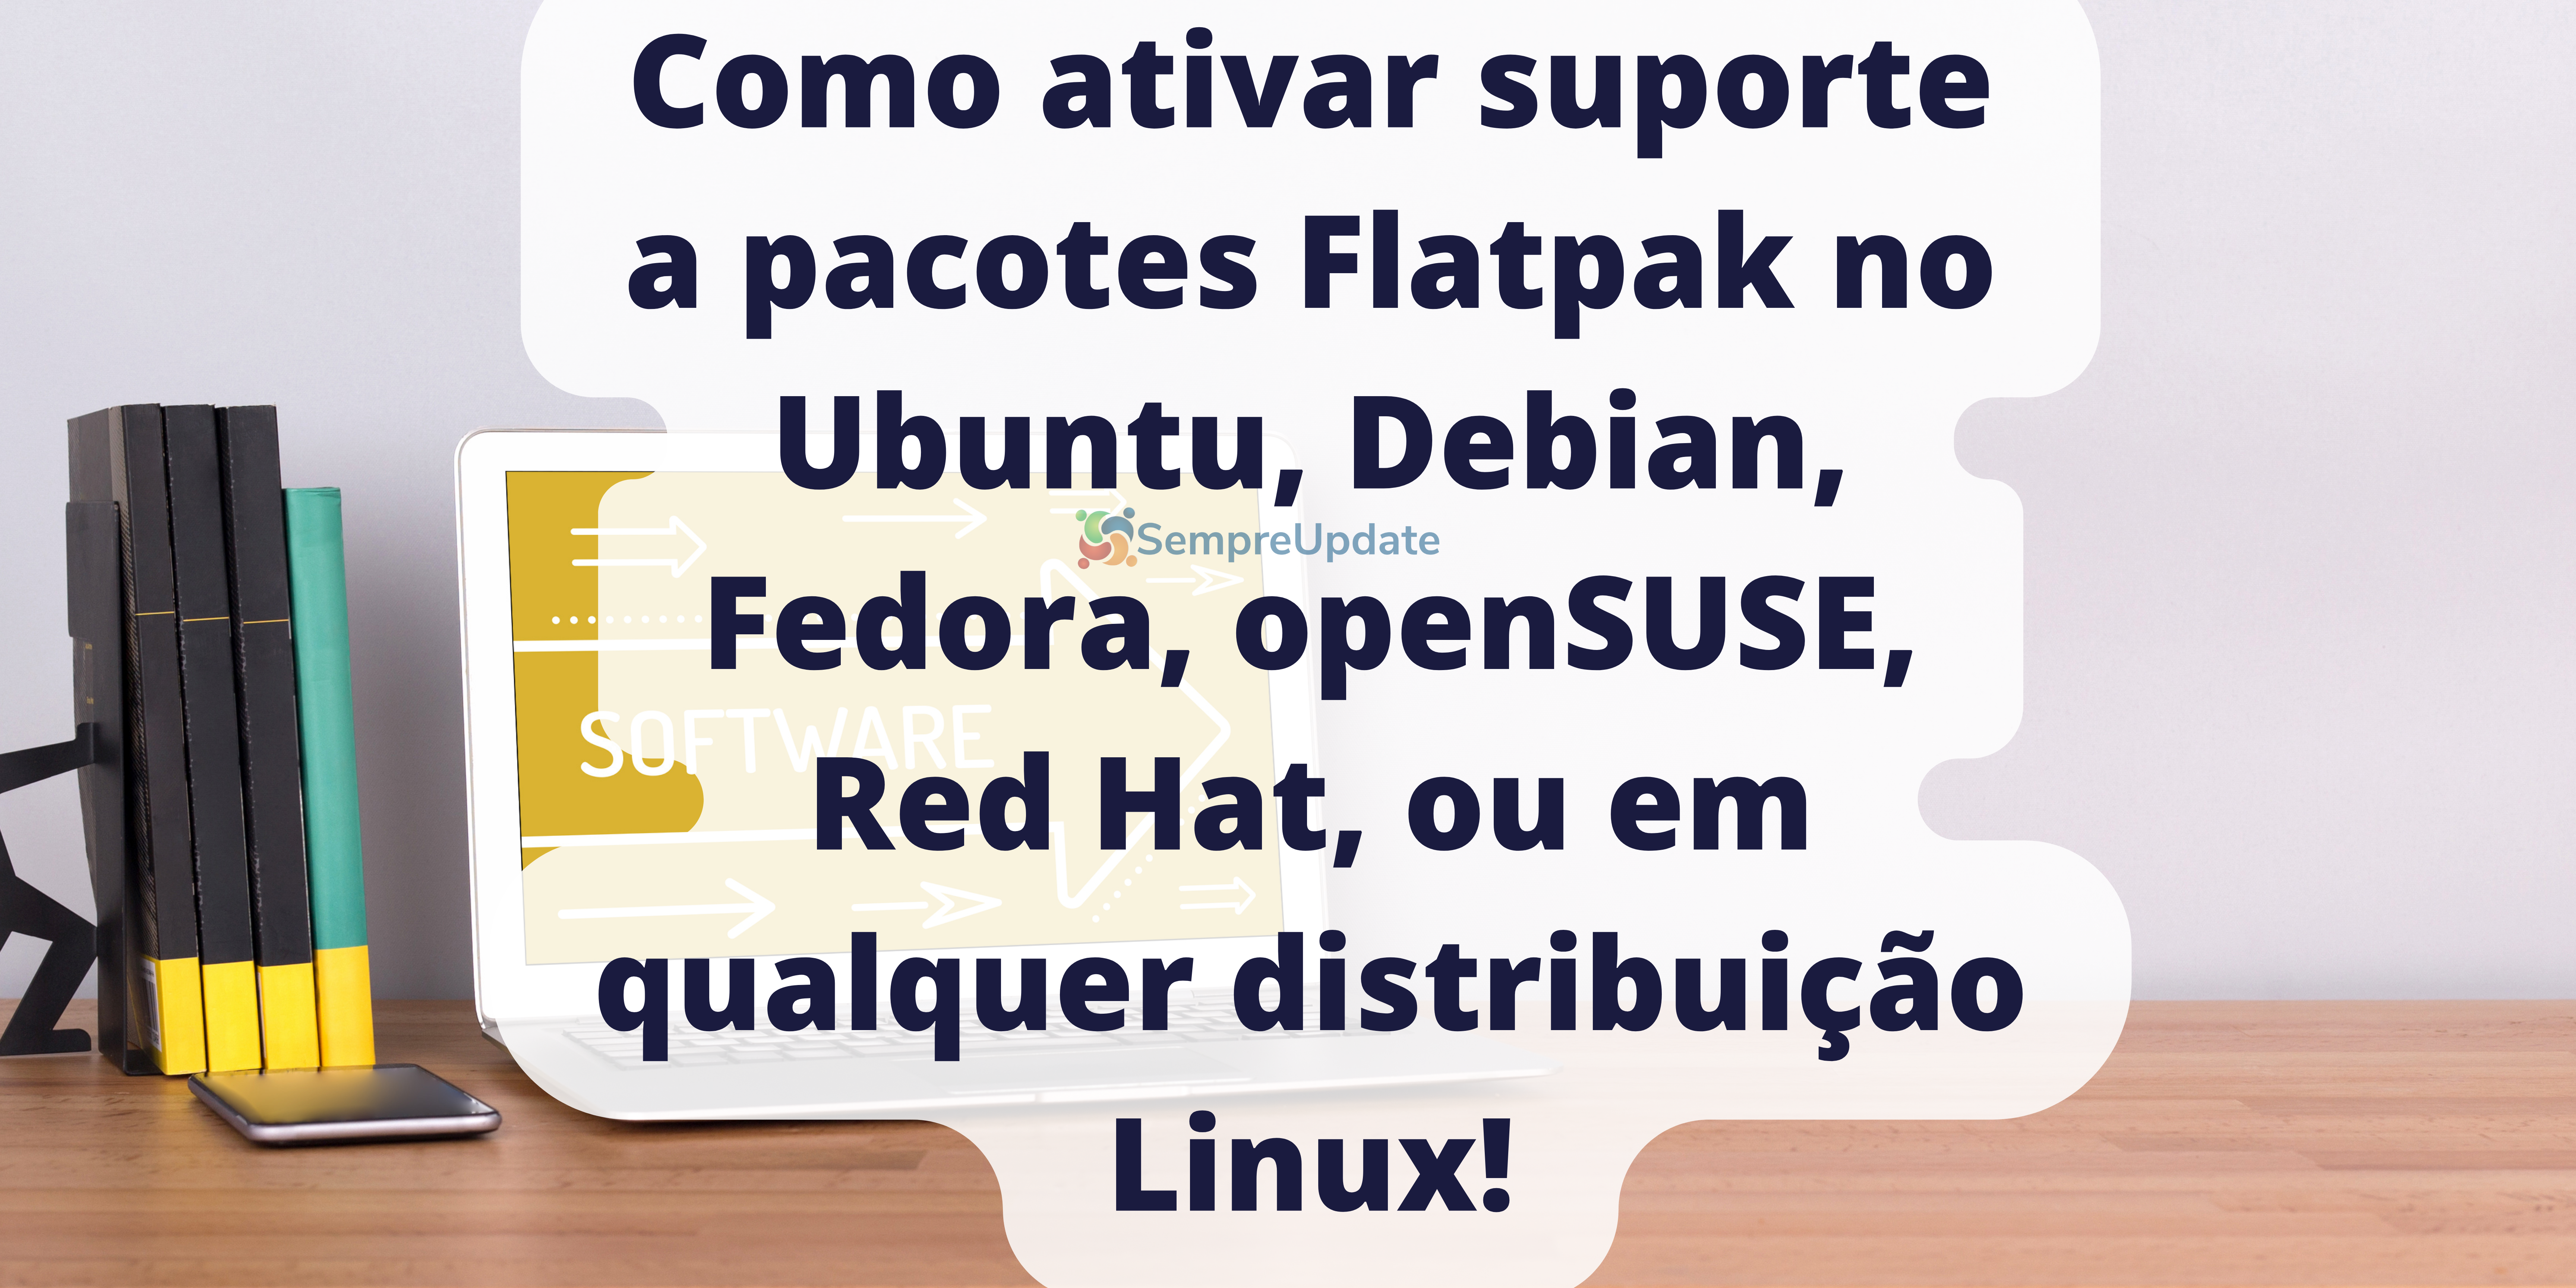 Como ativar suporte a pacotes Flatpak no Ubuntu Linux, Debian, Fedora, openSUSE, Red Hat, ou em qualquer distribuição Linux!